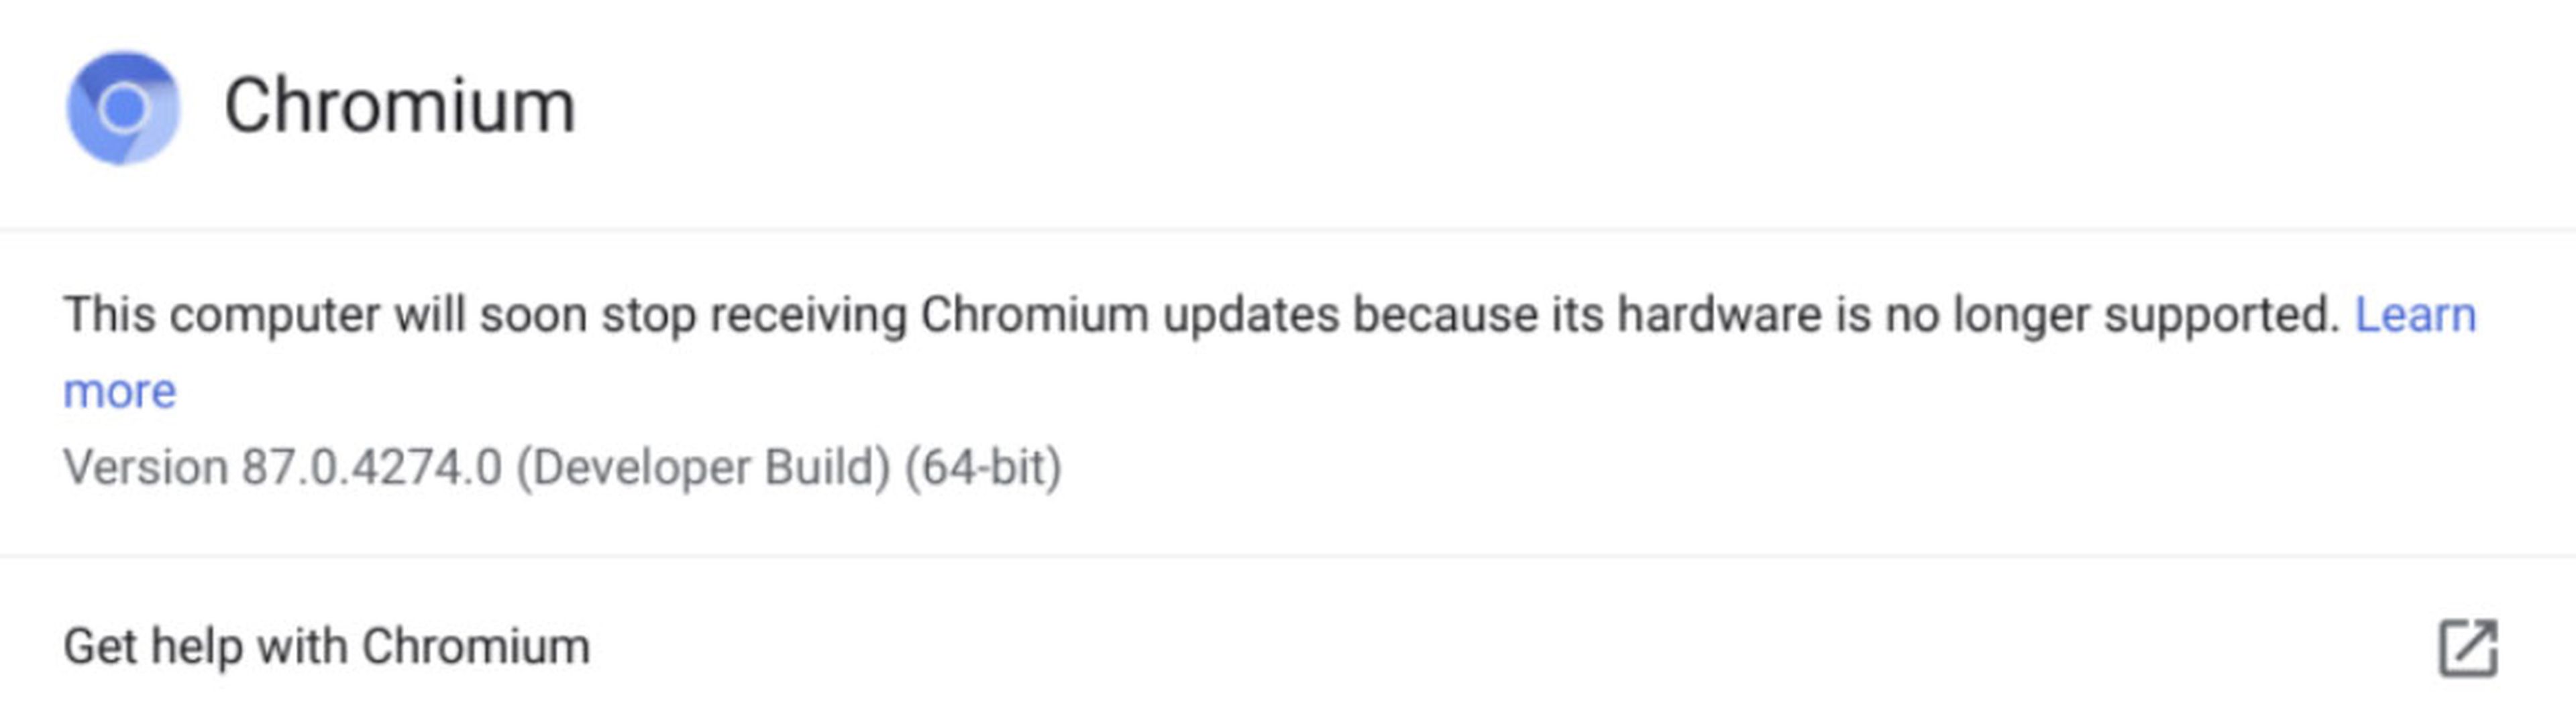 Advertencia en Chrome 87